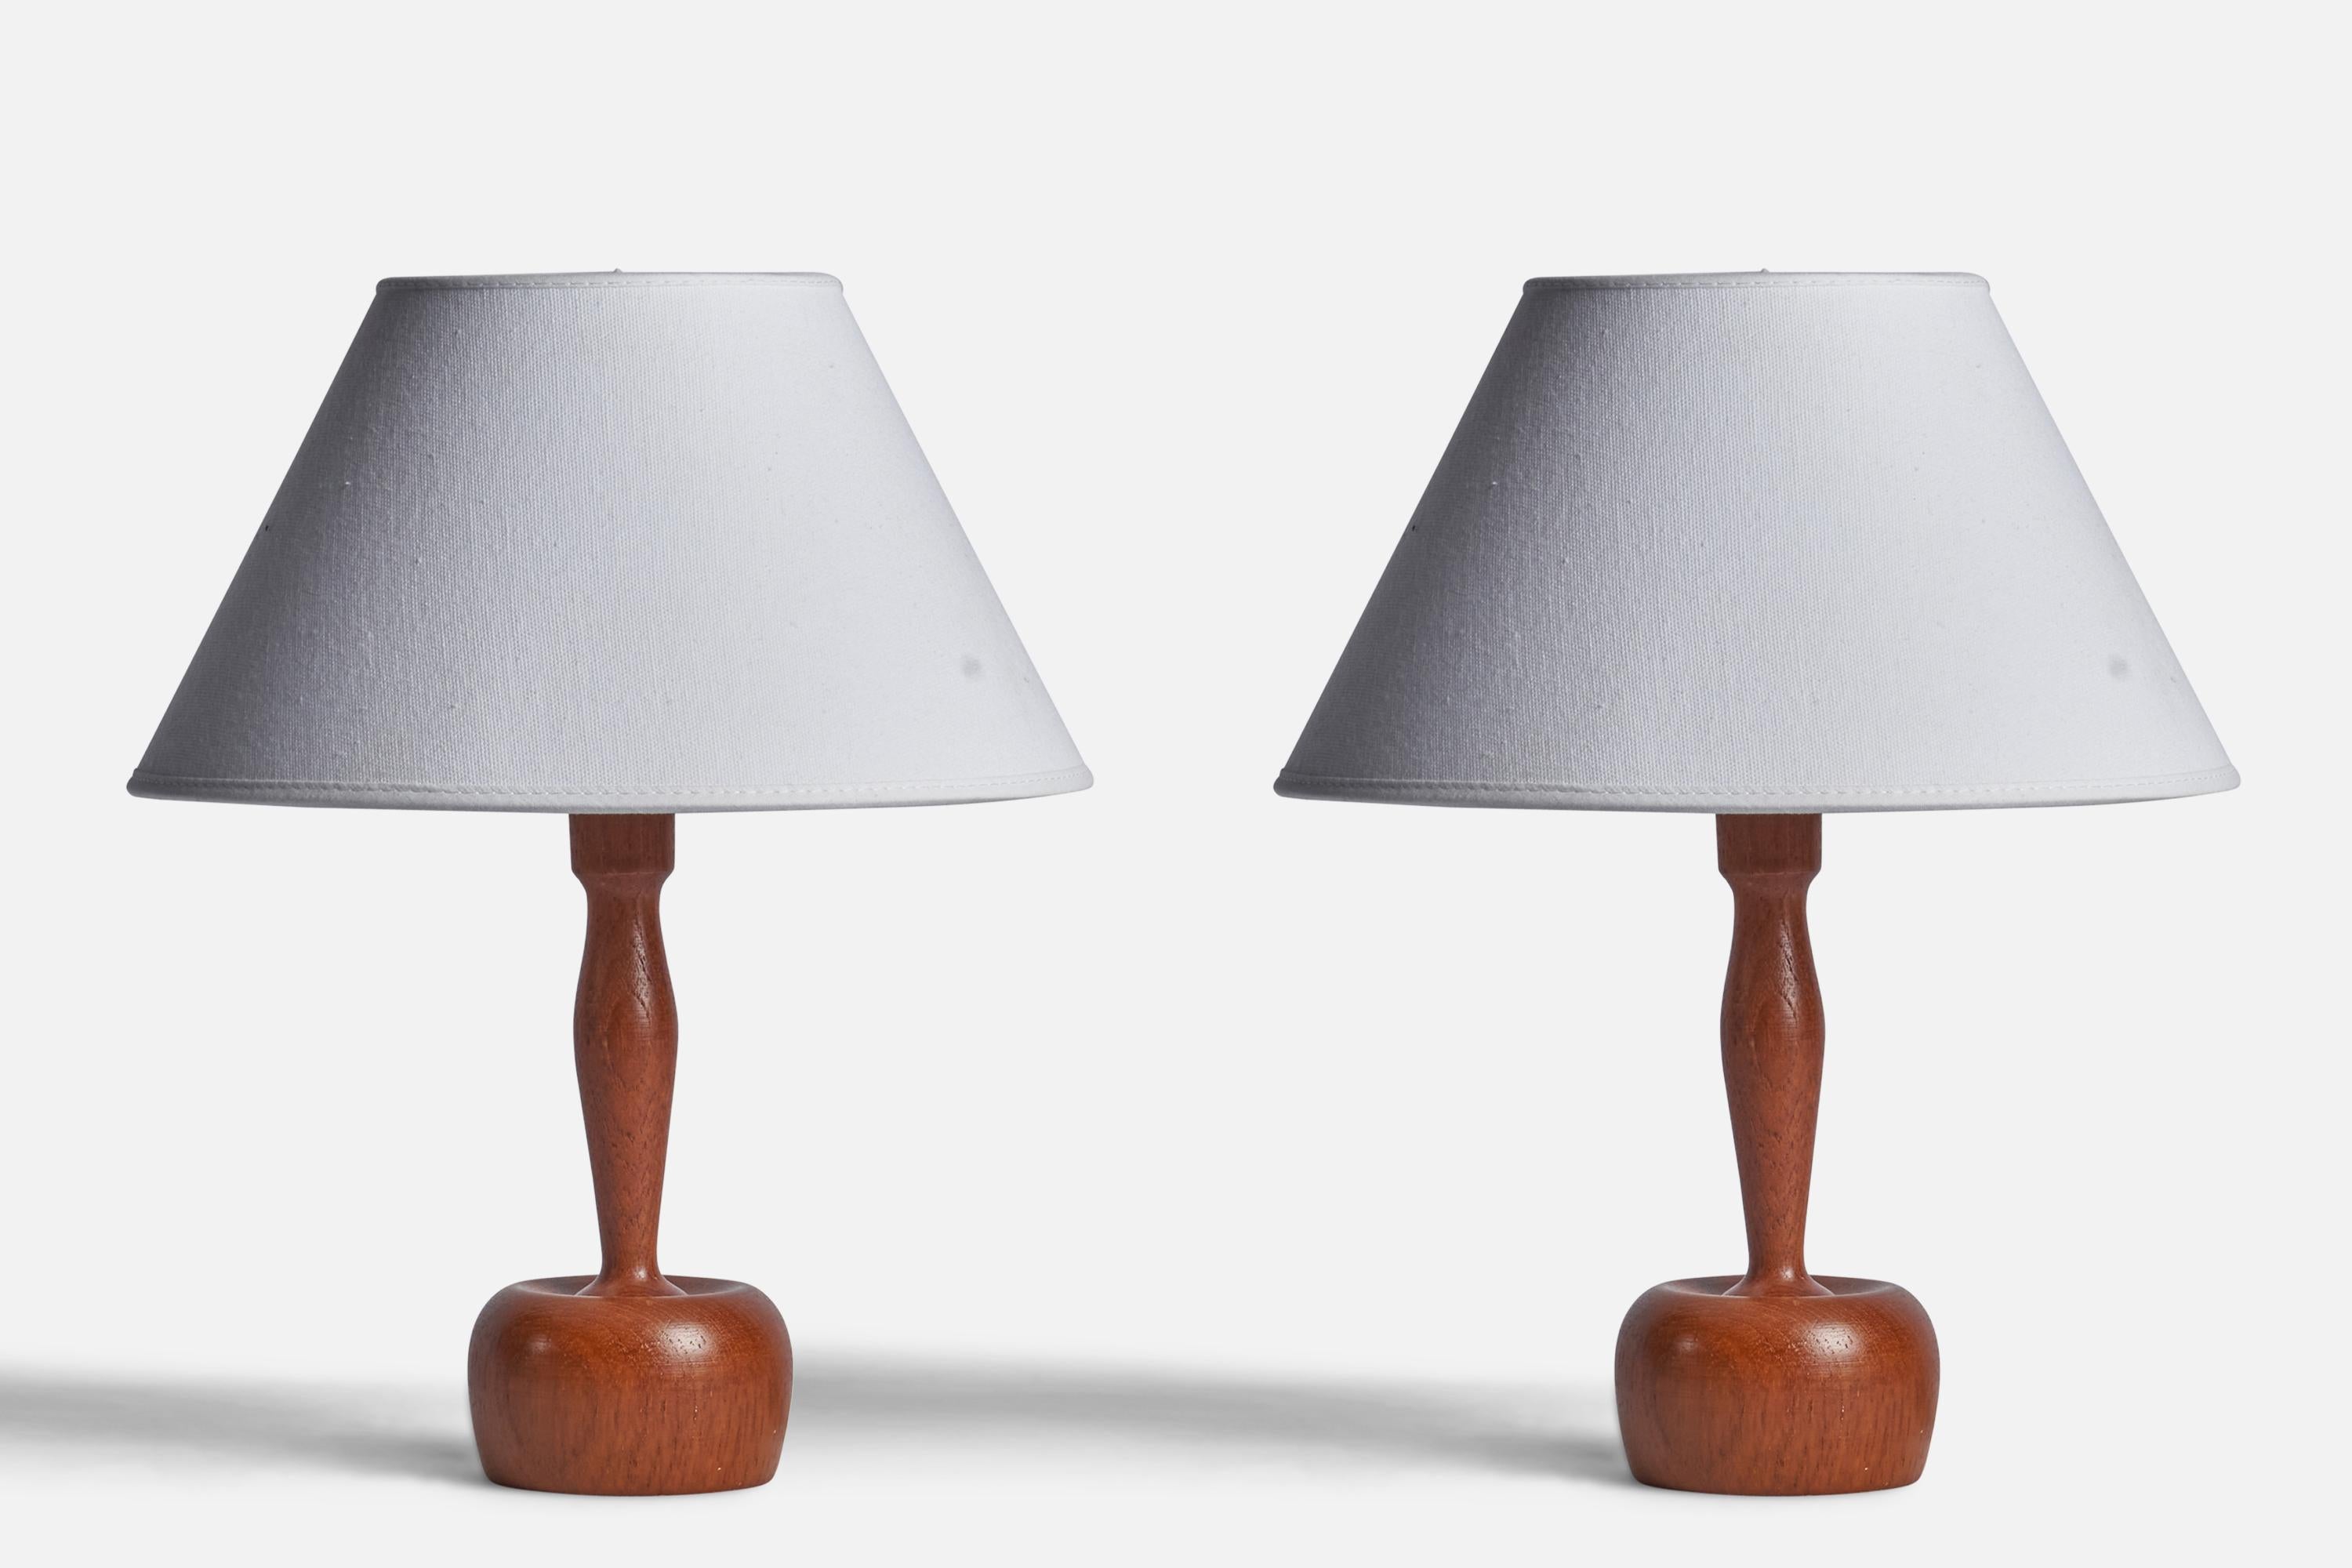 Ein Paar Tischlampen aus gedrechseltem Teakholz, entworfen und hergestellt von Markslöjd, Kinna, Schweden, 1960er Jahre.

Abmessungen der Lampe (Zoll): 9,25